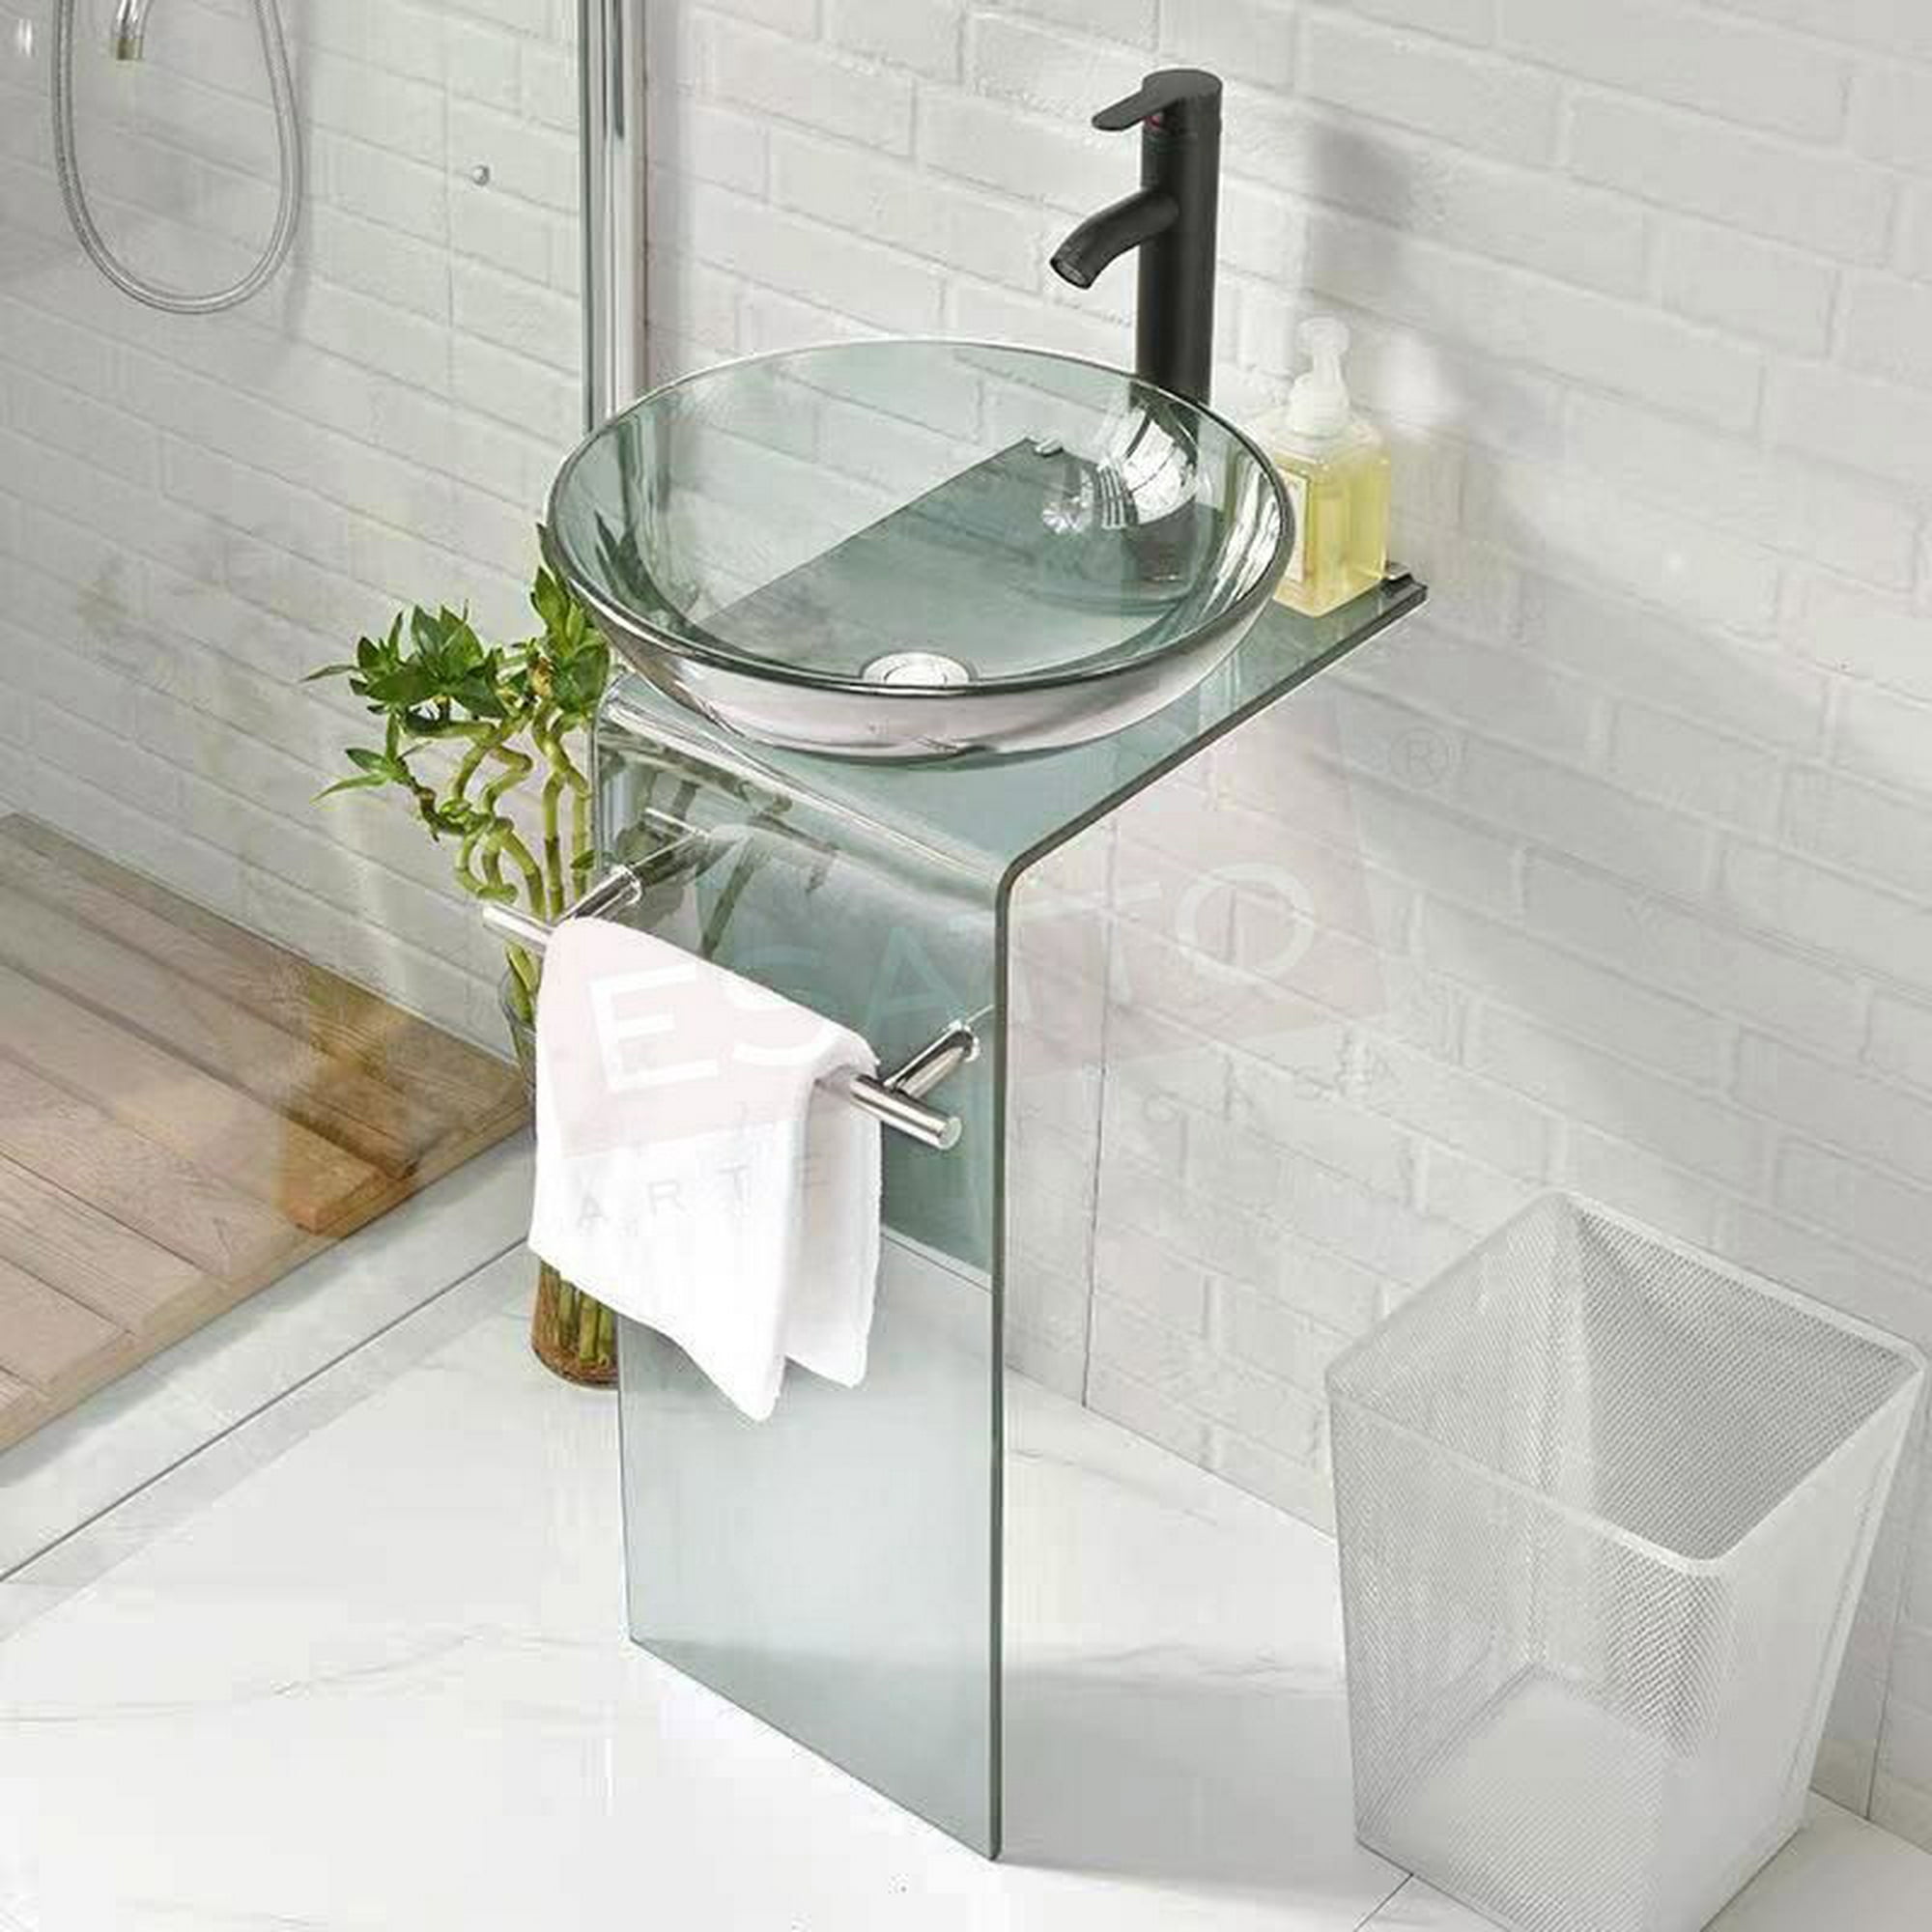 Esatto® mueble lavabo baño cristal temp llave negra mv-011n esatto mueble para baño